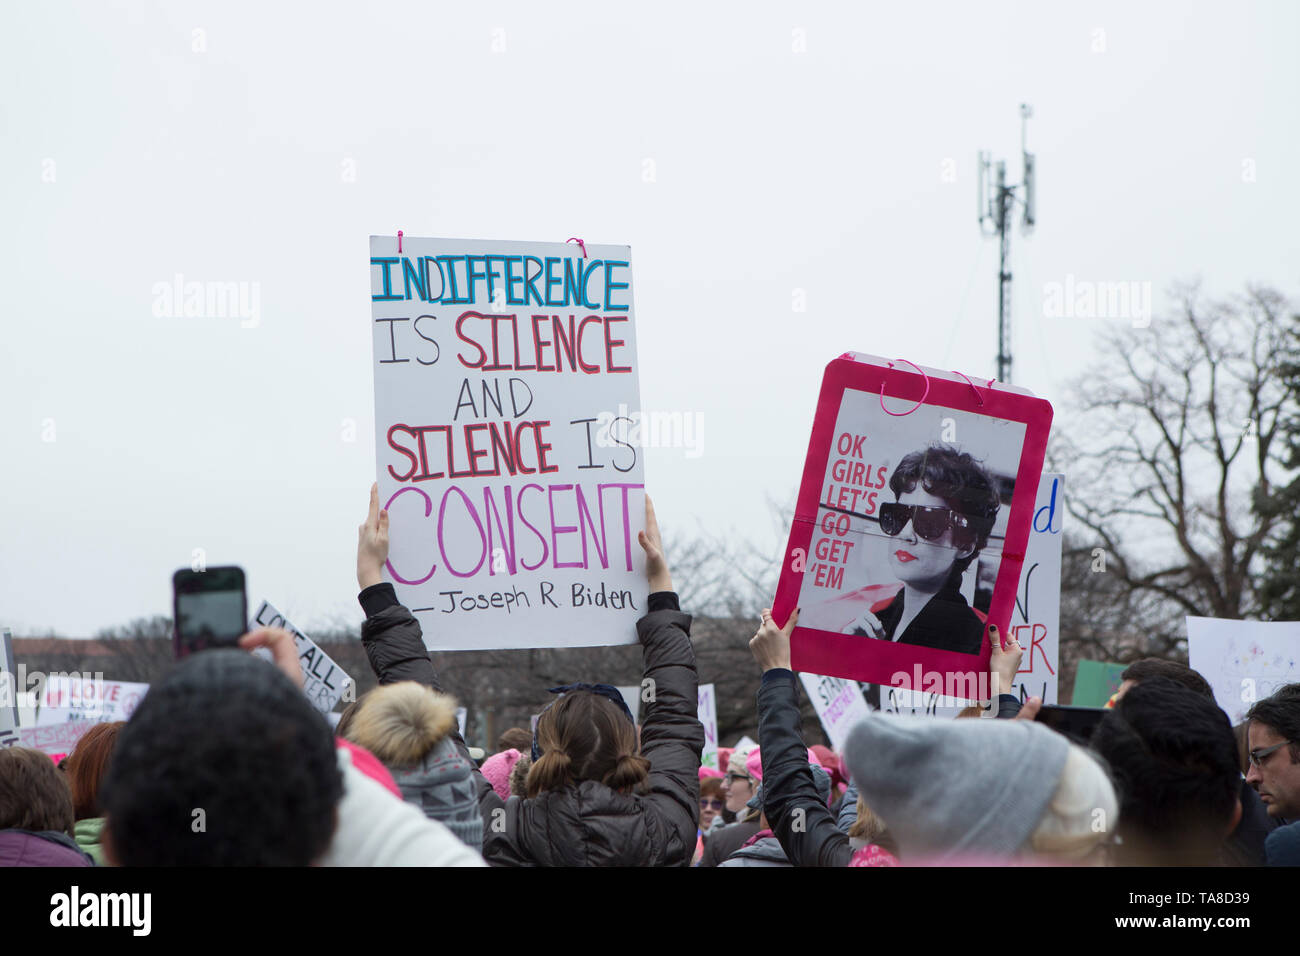 Les manifestants brandissant des signes au cours de la Marche des femmes, Washington, D.C., USA, le 21 janvier 2017 Banque D'Images